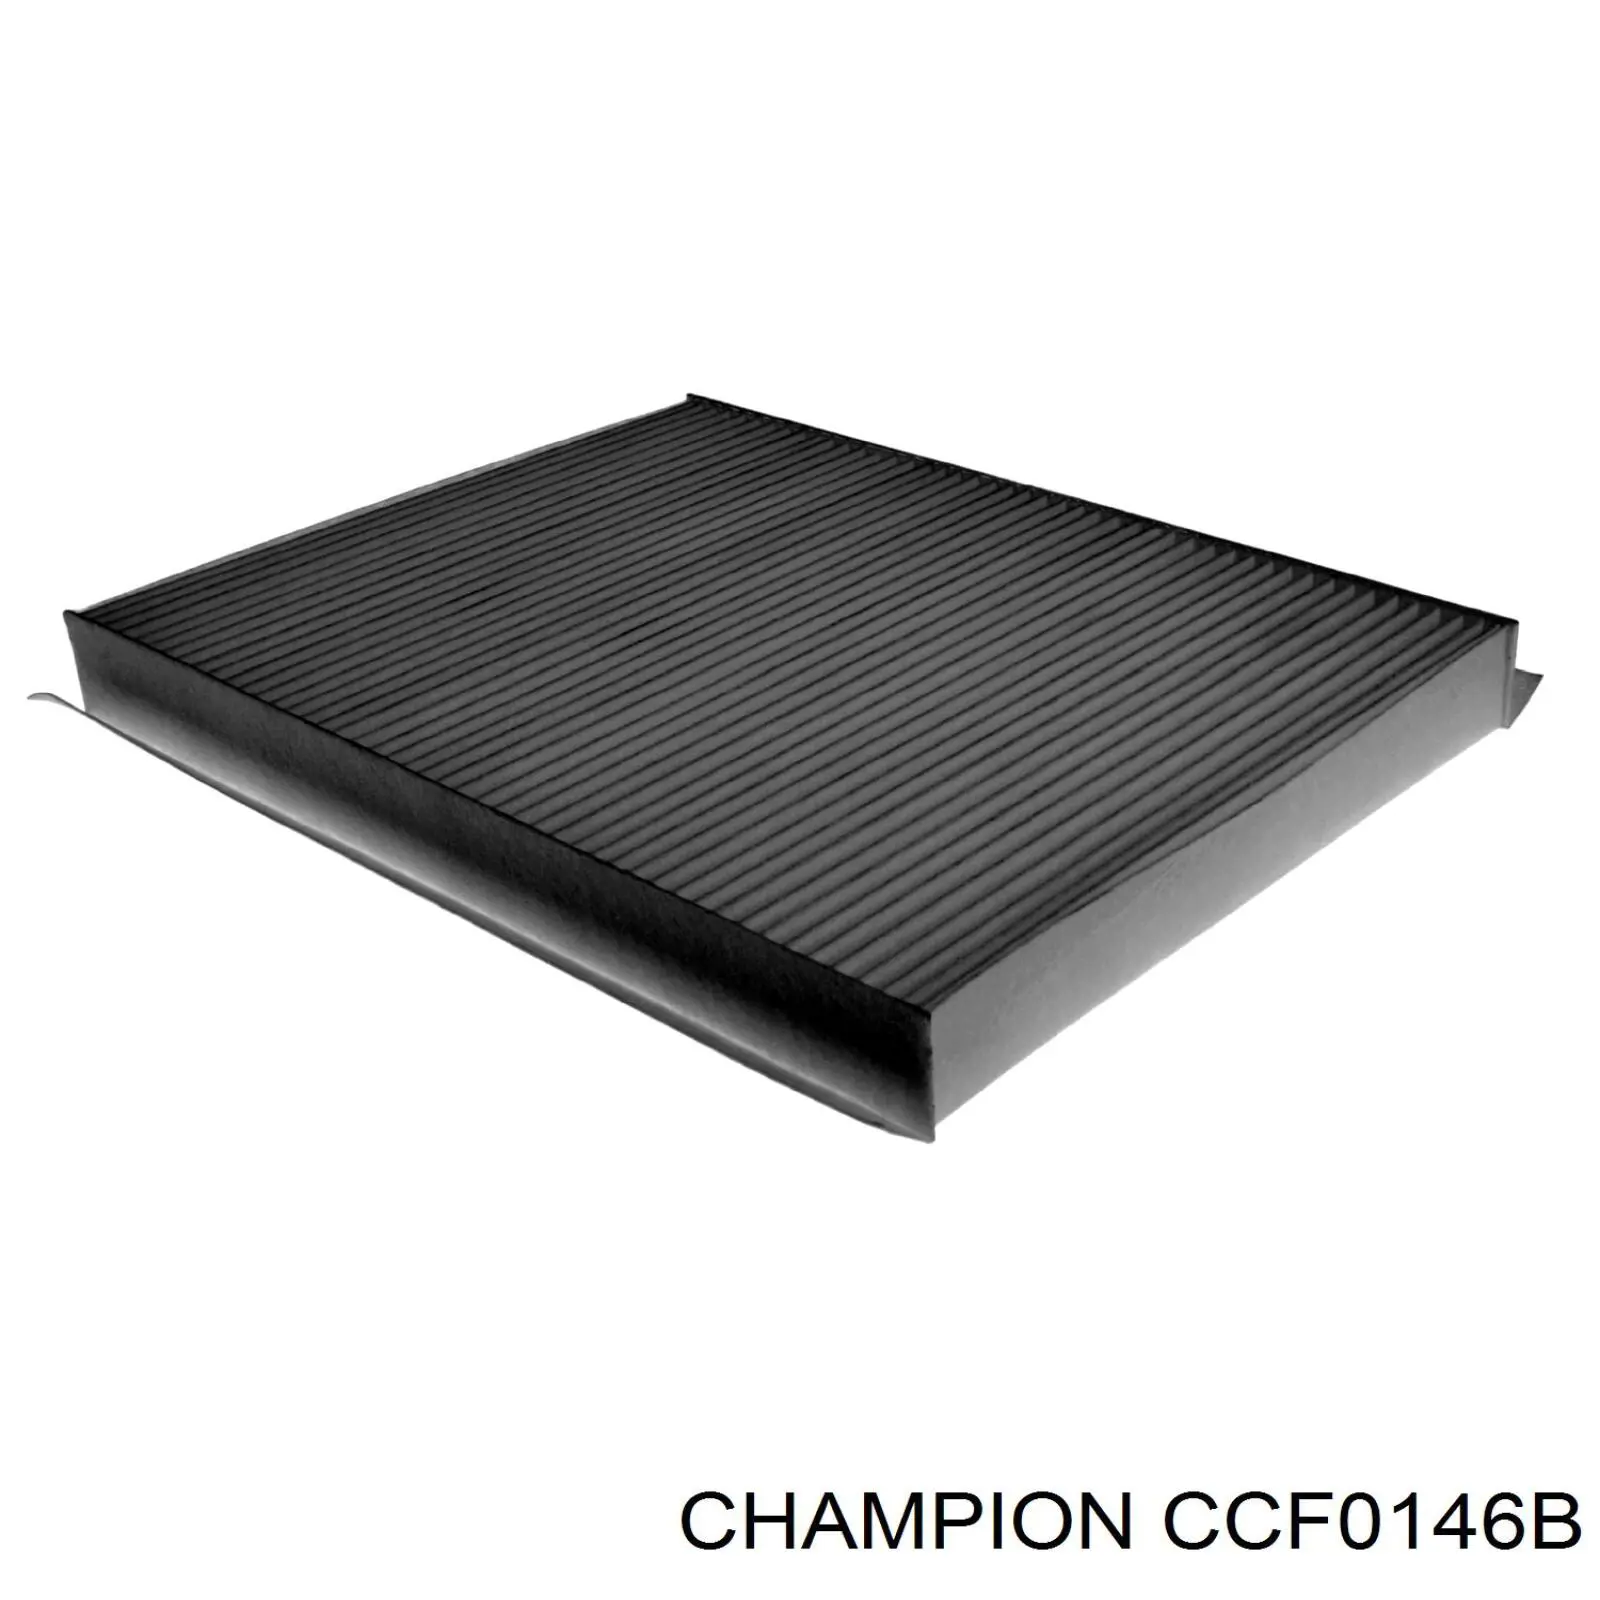 CCF0146B Champion filtro habitáculo